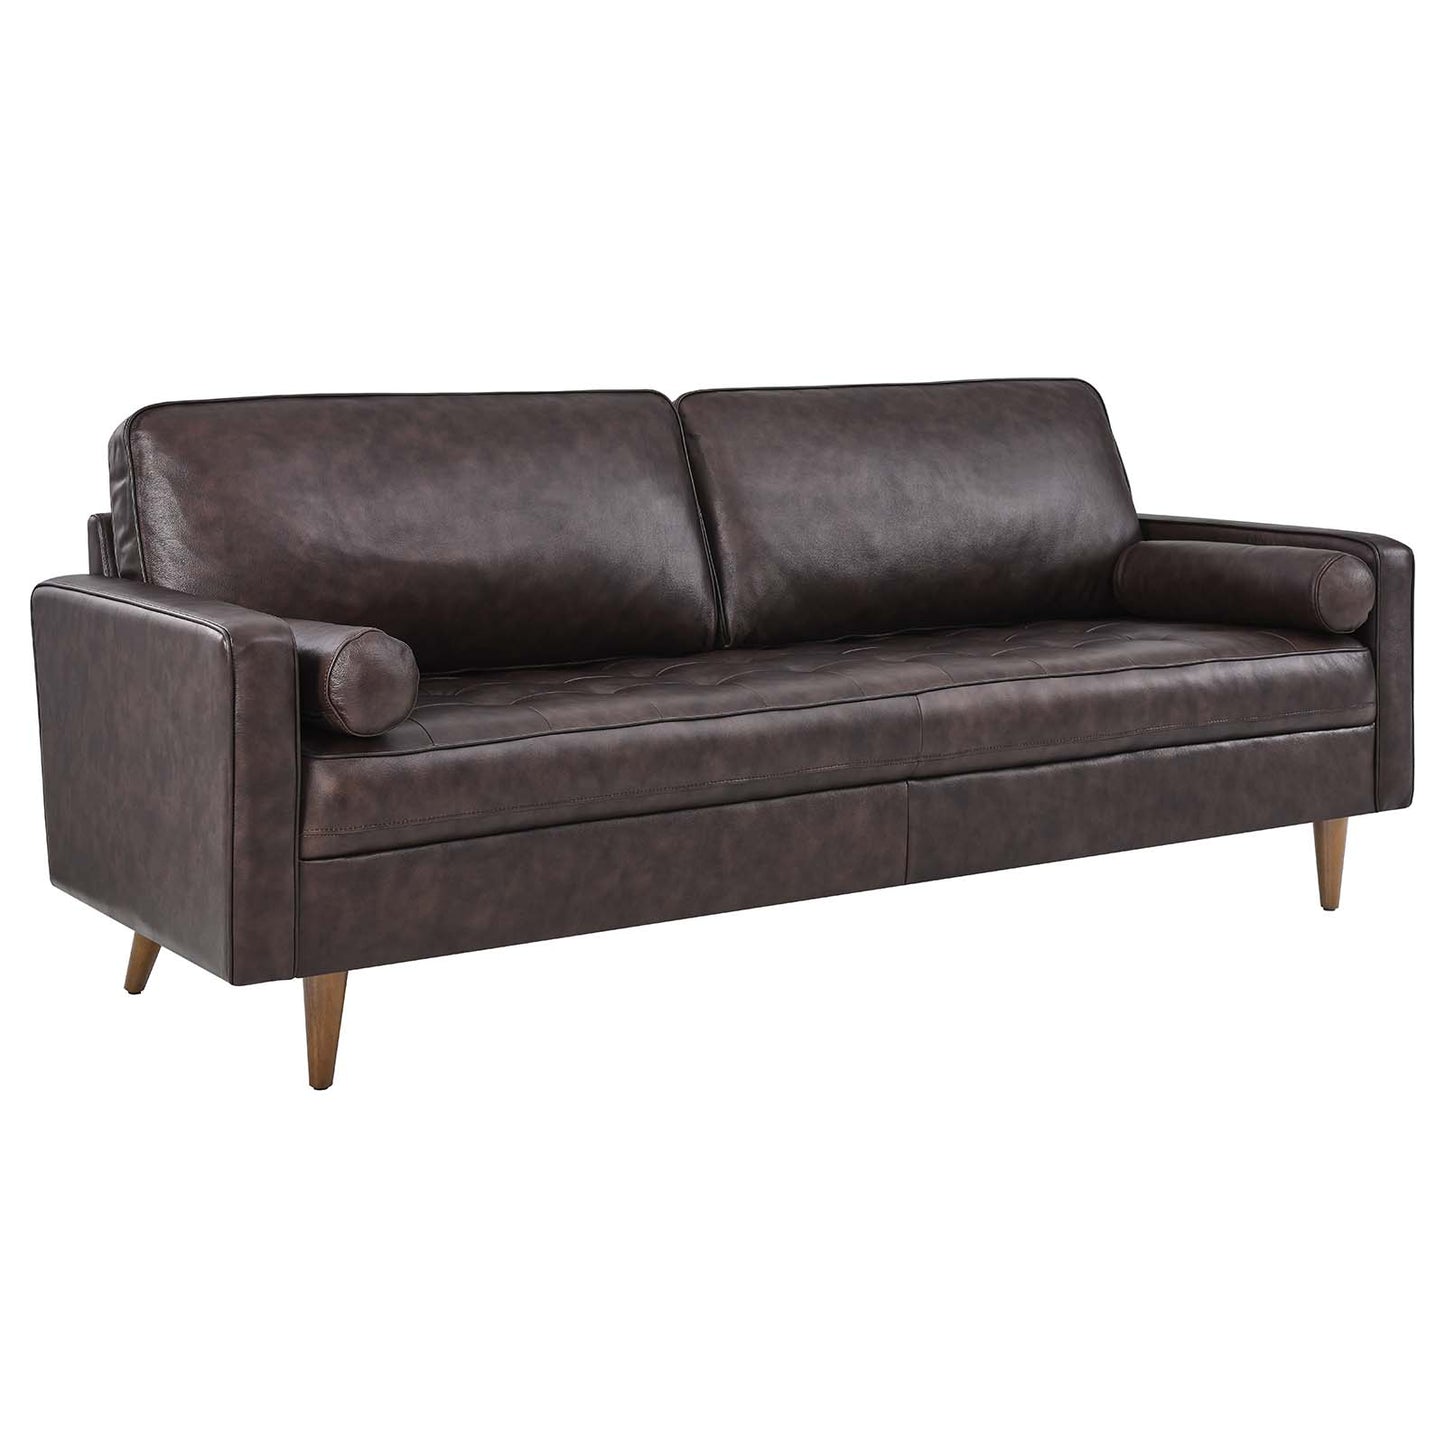 Valour 81" Leather Sofa Brown EEI-4634-BRN